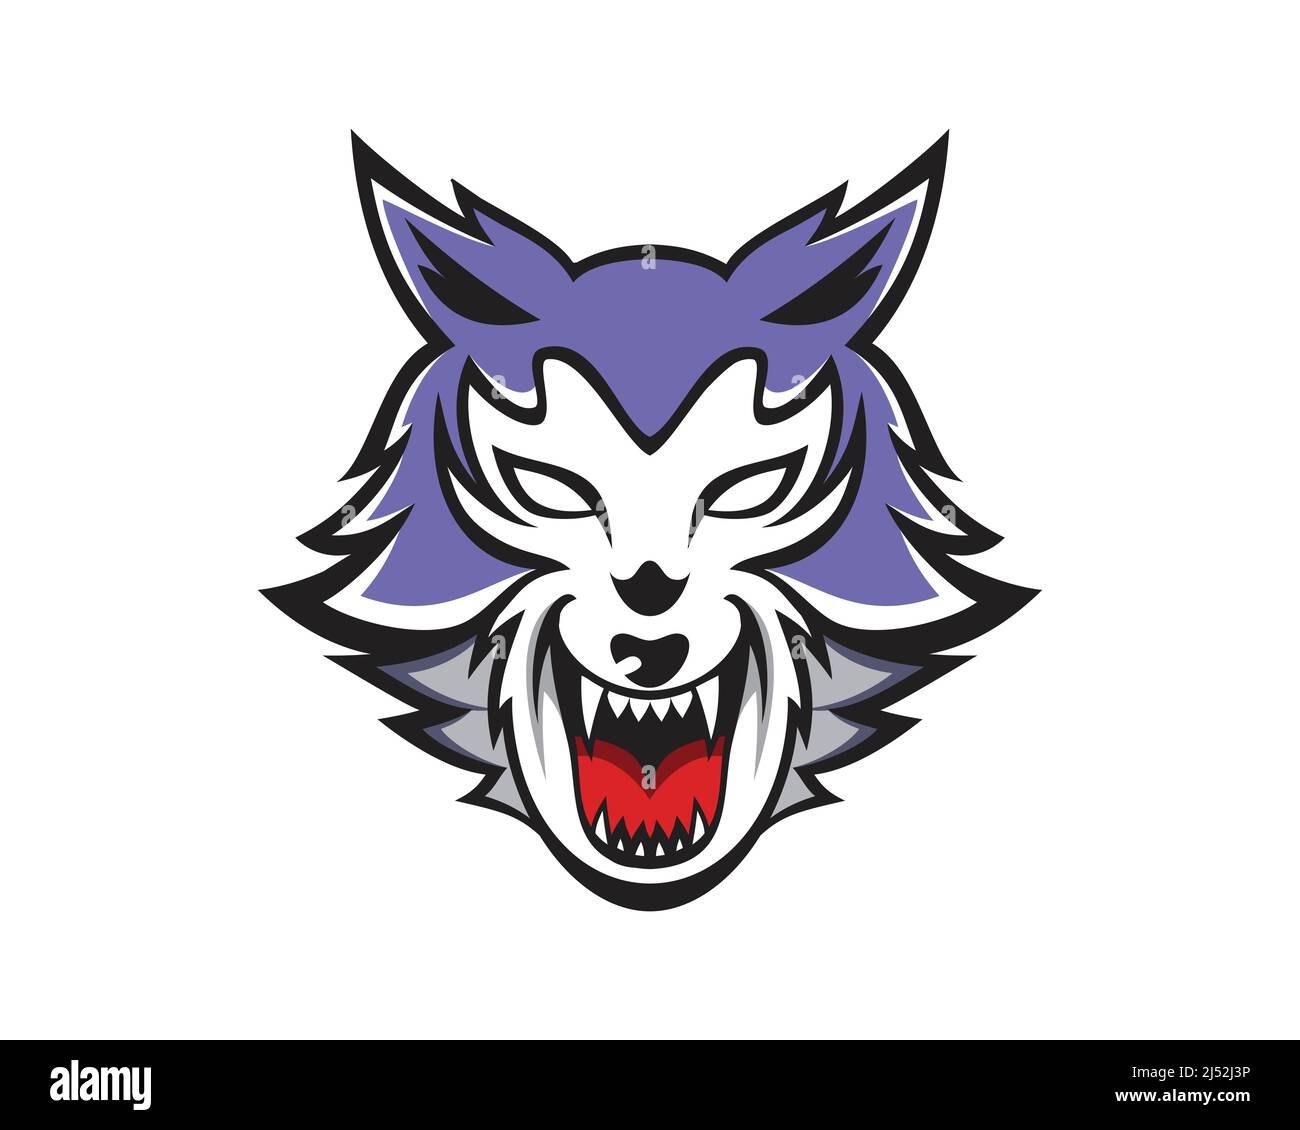 Vecteur d'illustration Angry Wolf Head Mascot Illustration de Vecteur